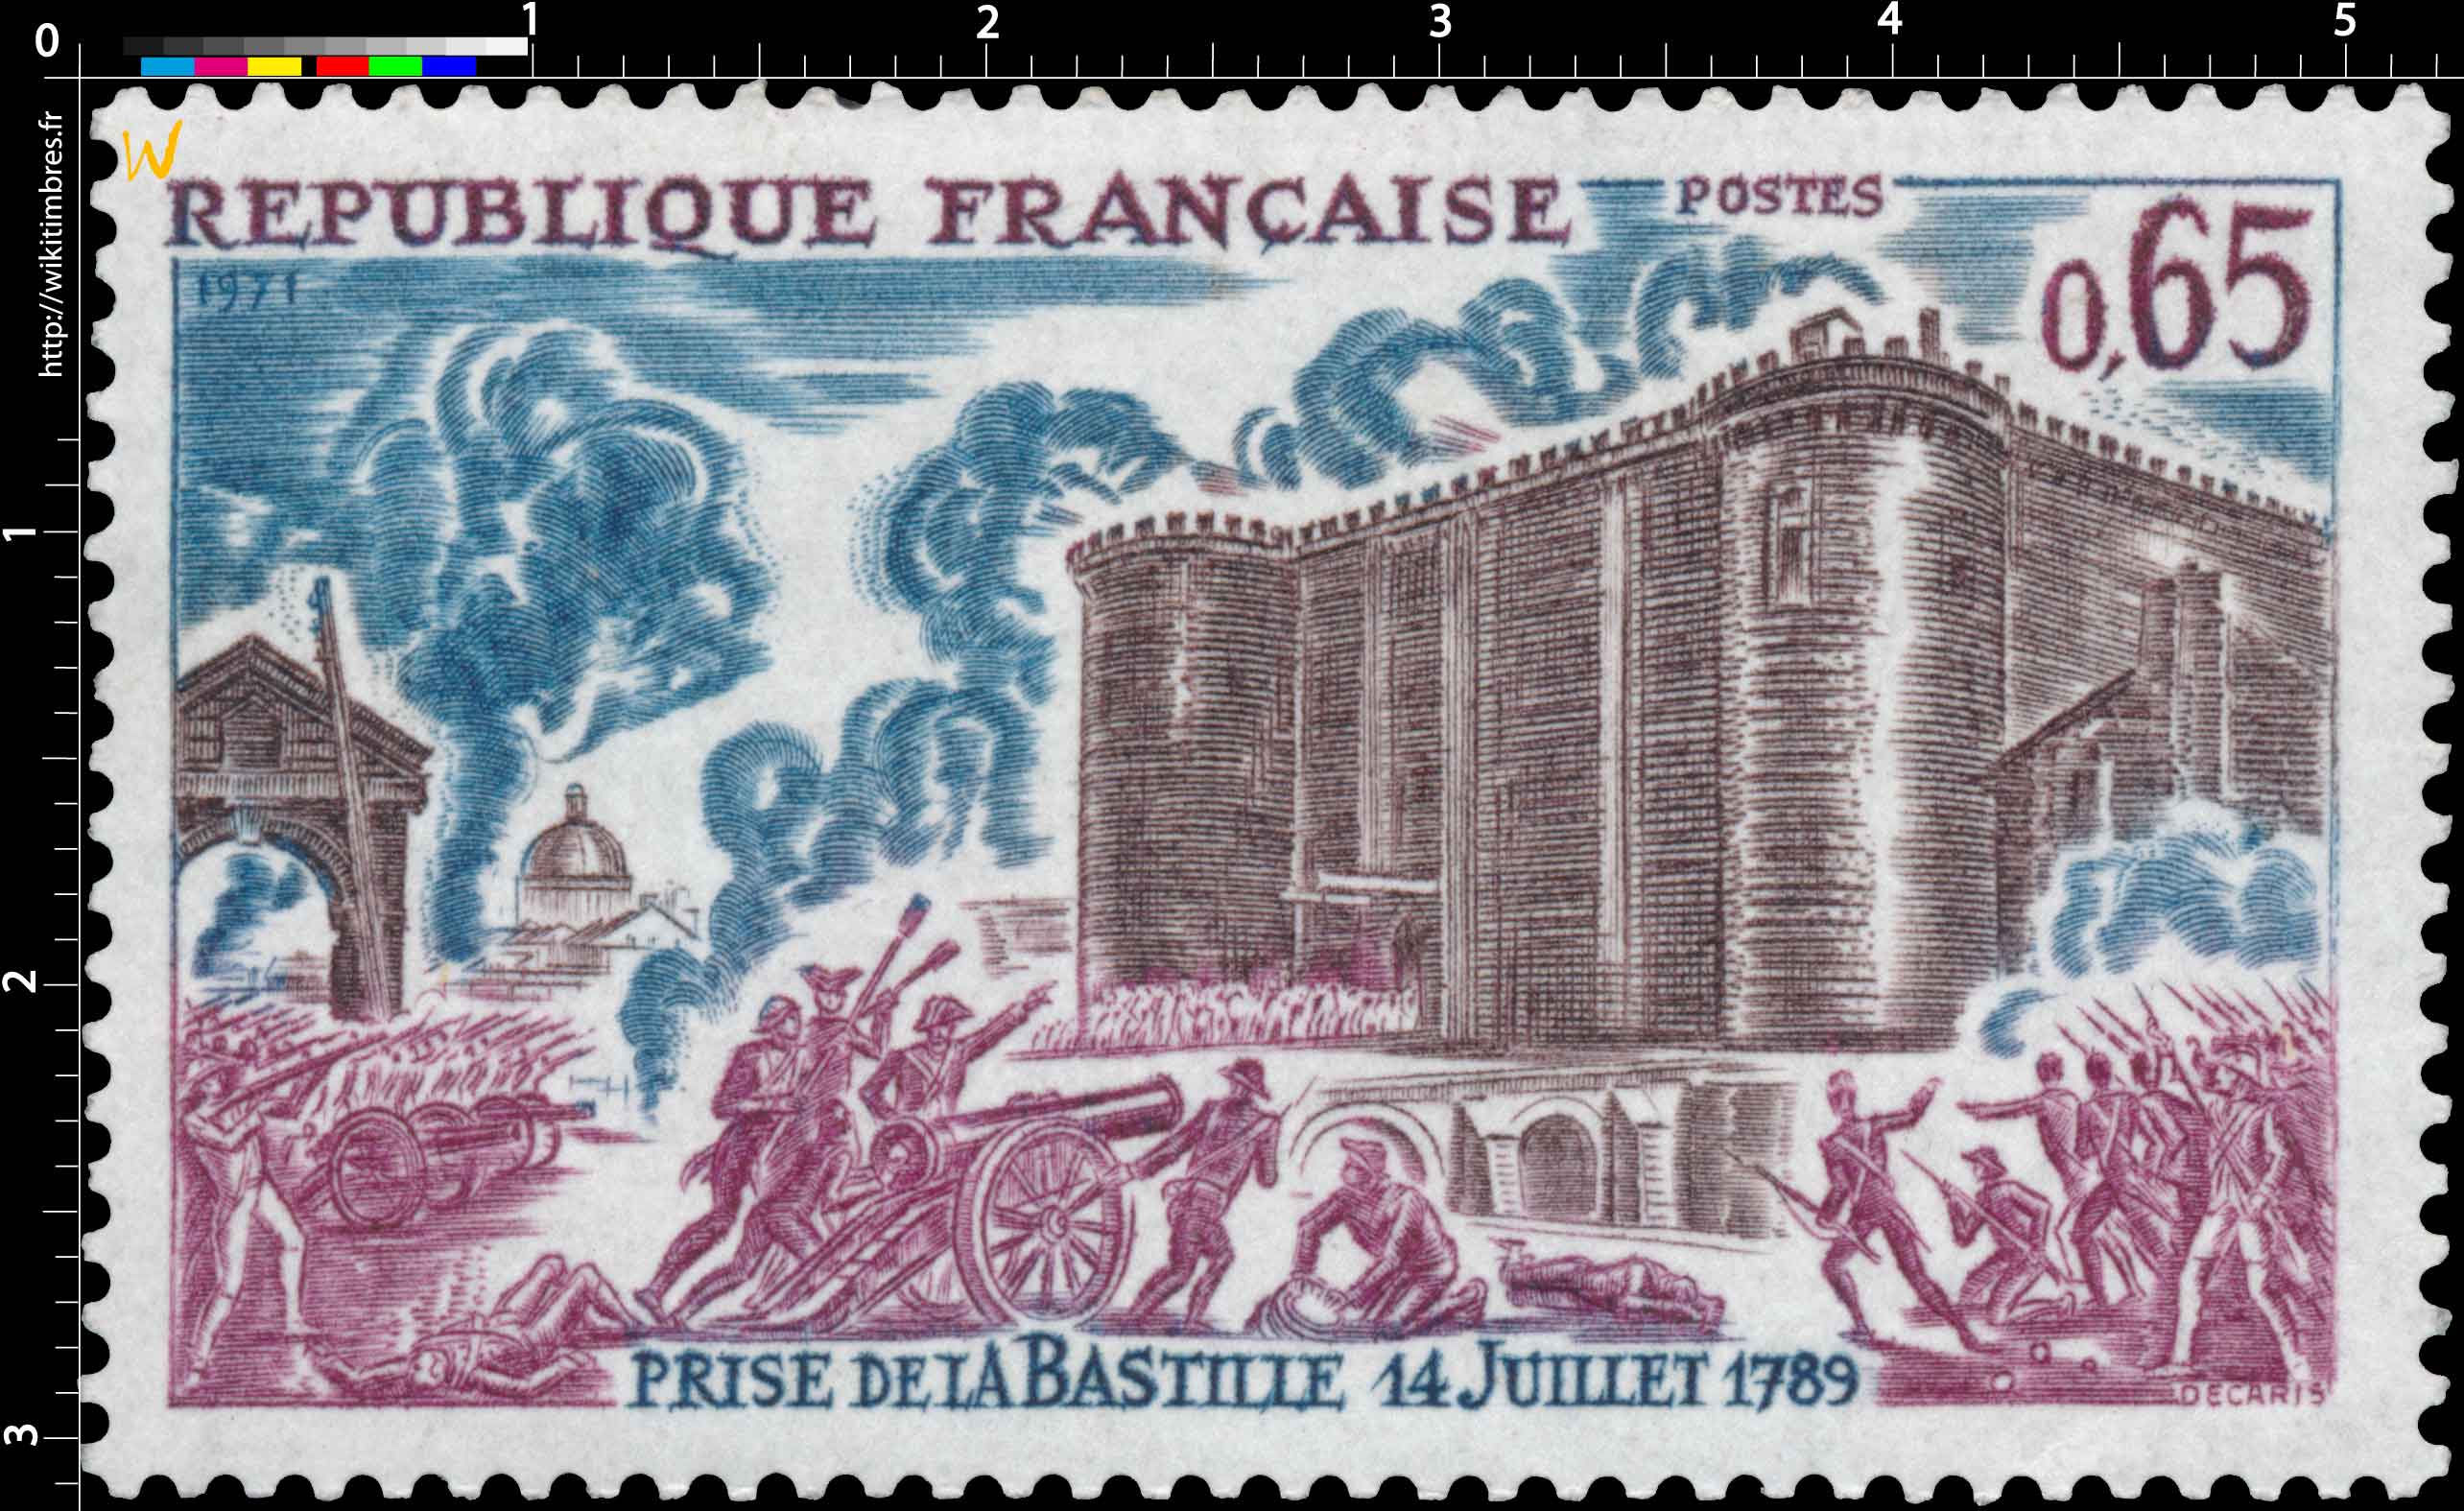 1971 PRISE DE LA BASTILLE 14 JUILLET 1789